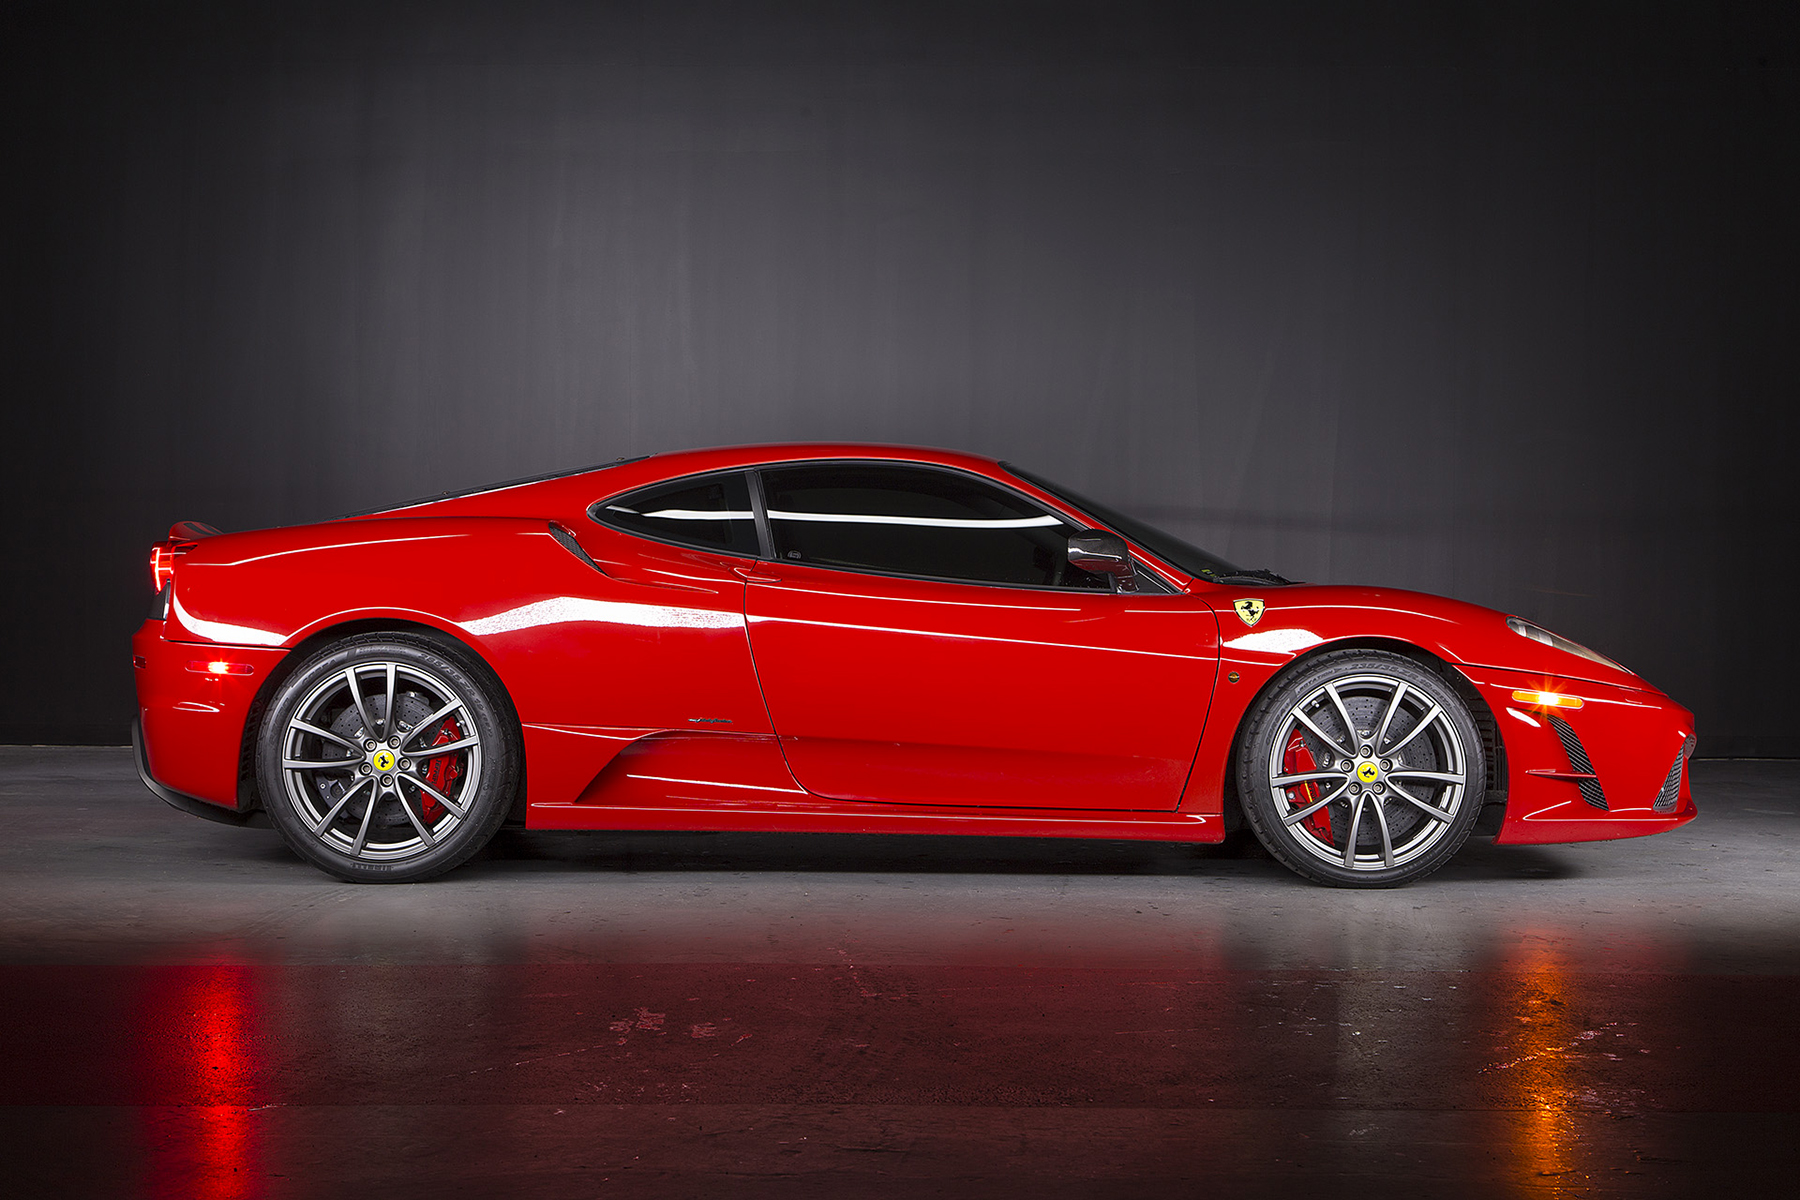 Đam mê tốc độ và sự sang trọng của chiếc Ferrari 430 Scuderia sẽ khiến bạn liên tưởng đến những cuộc đua đầy cảm xúc trên đường đua. Hãy cùng chiêm ngưỡng hình nền đẹp với chiếc siêu xe này để đắm chìm trong không gian tuyệt vời của niềm đam mê! 